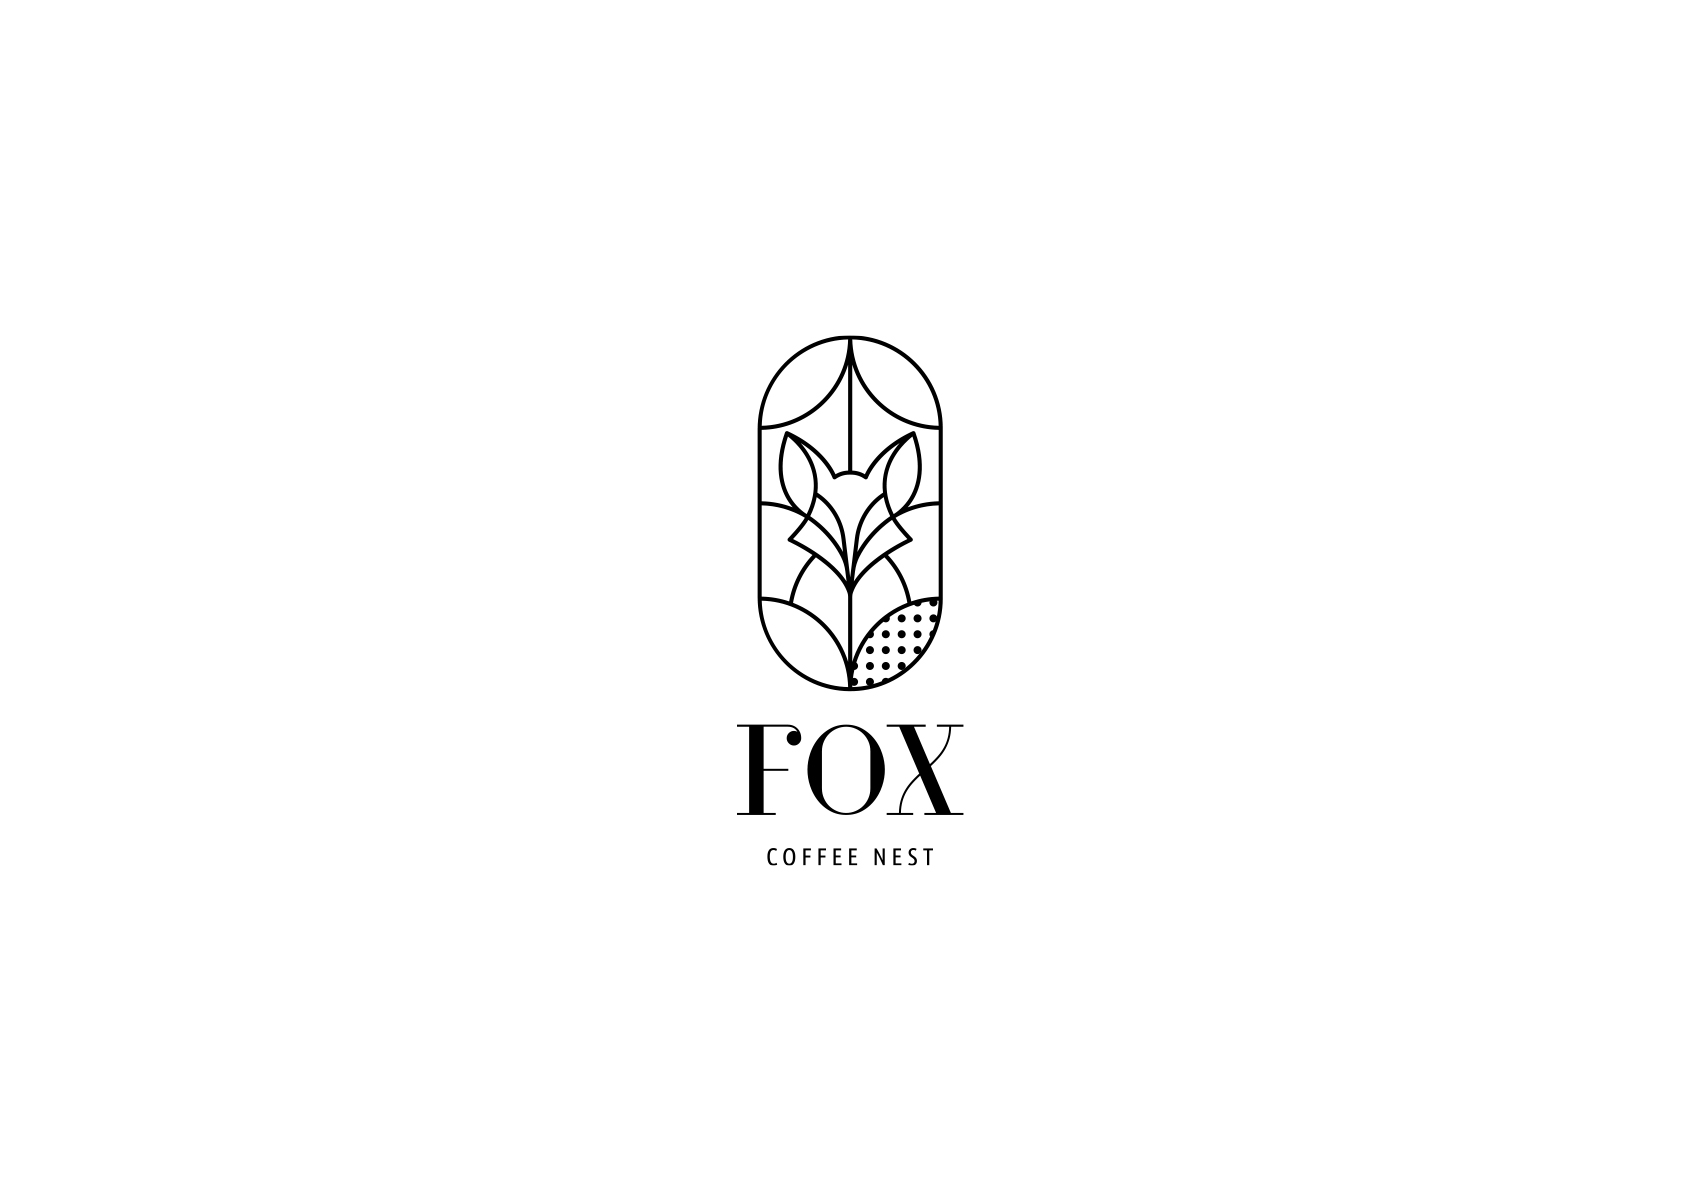 Fox coffee nest logo BW 1700x1200 by xhristakis